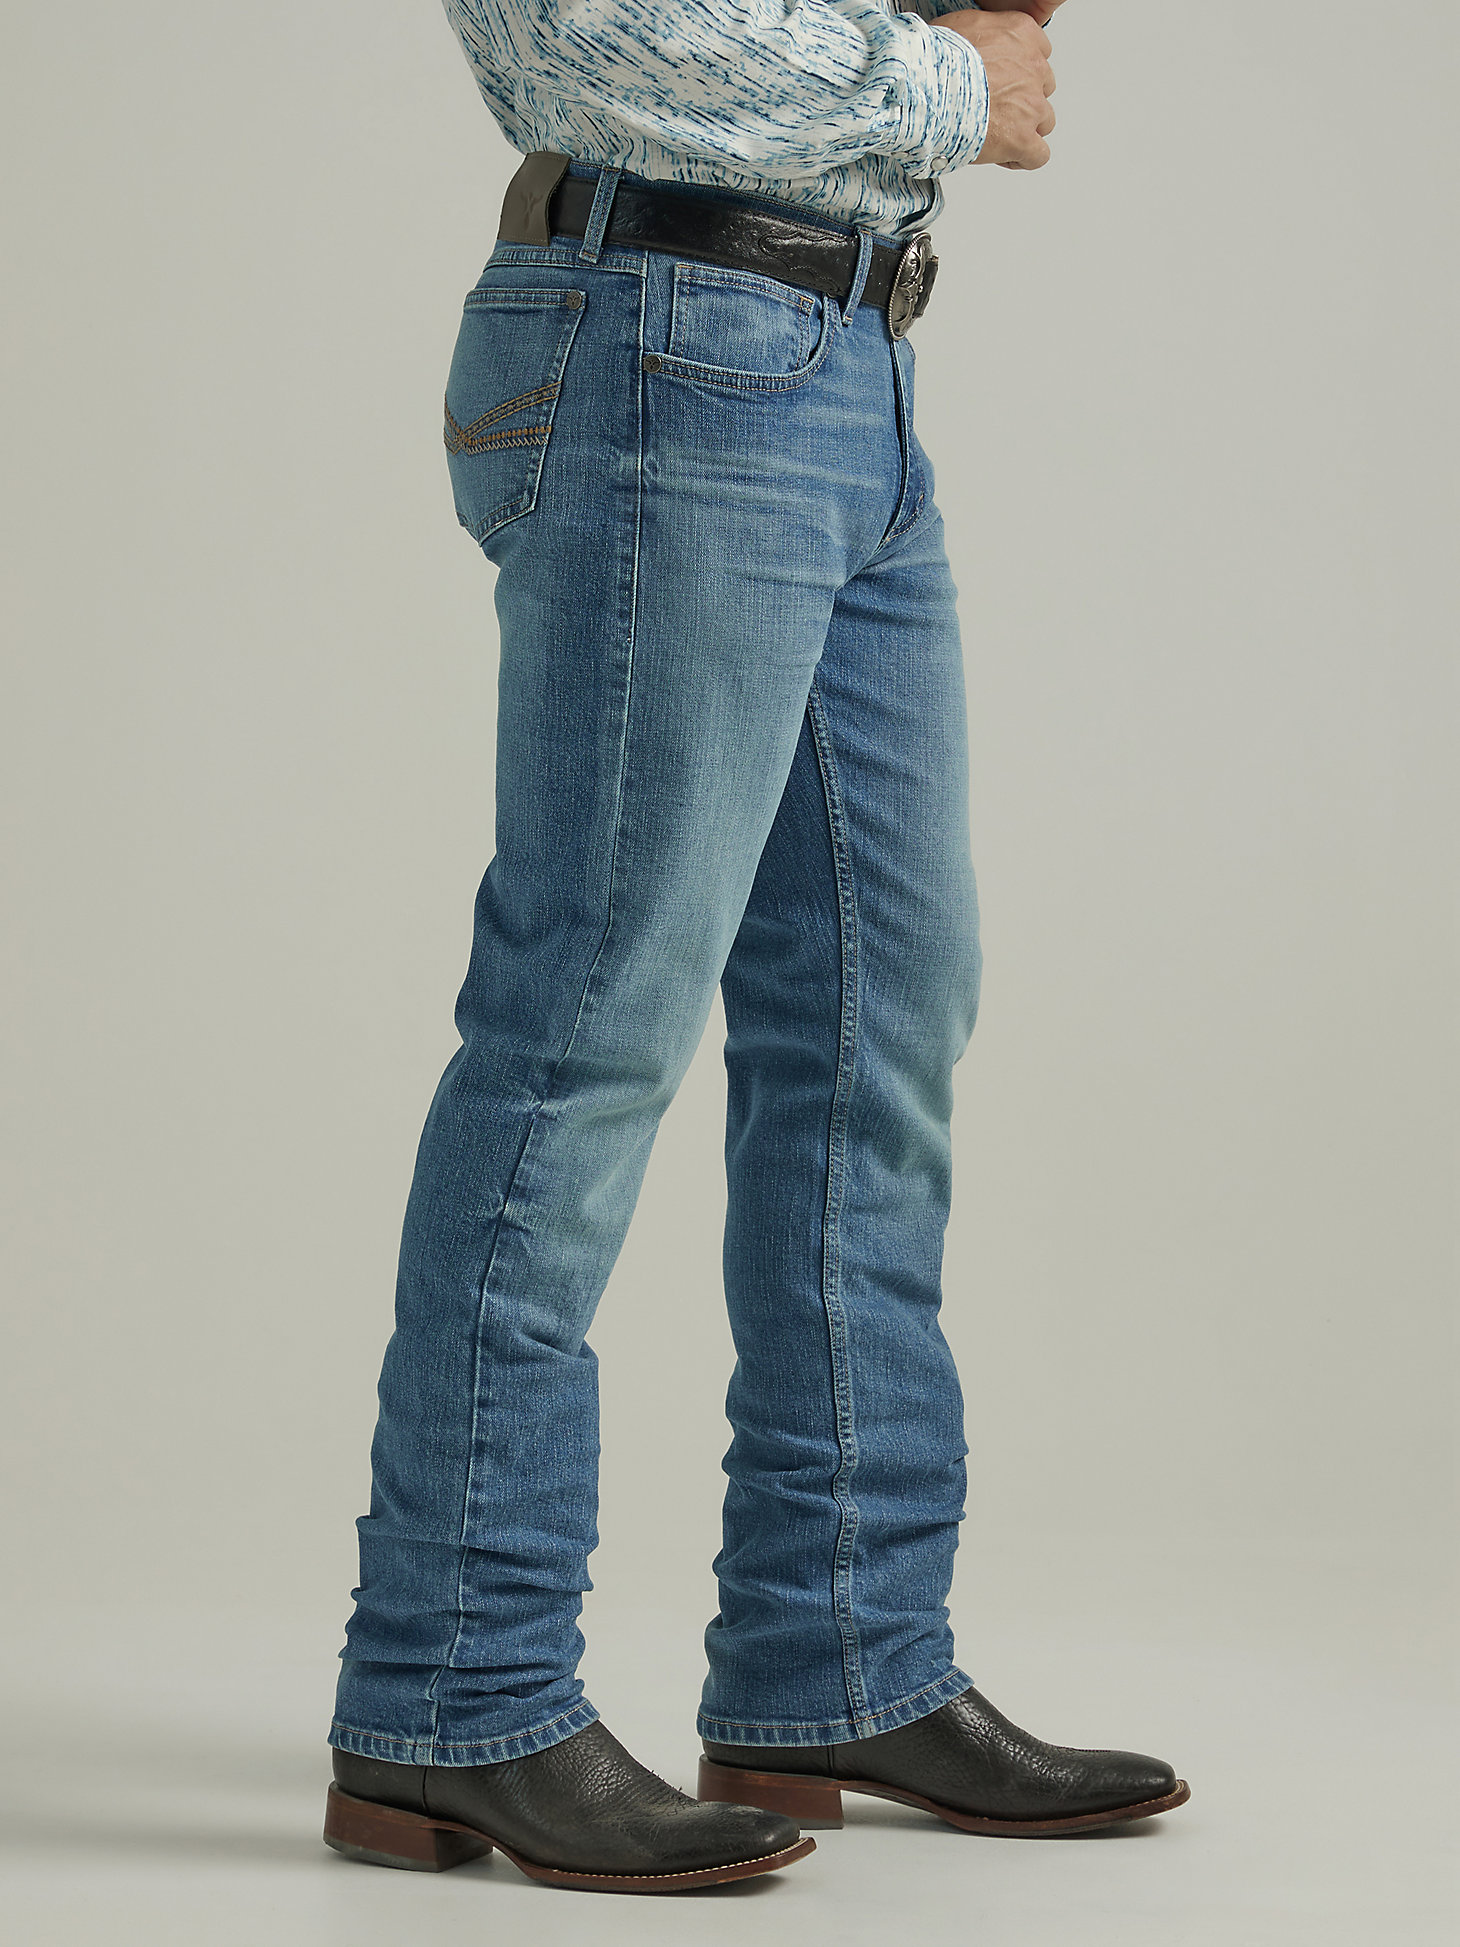 Men's Wrangler® 20X® No. 44 Slim Fit Straight Leg Jean in Breezy Pasture alternative view 4